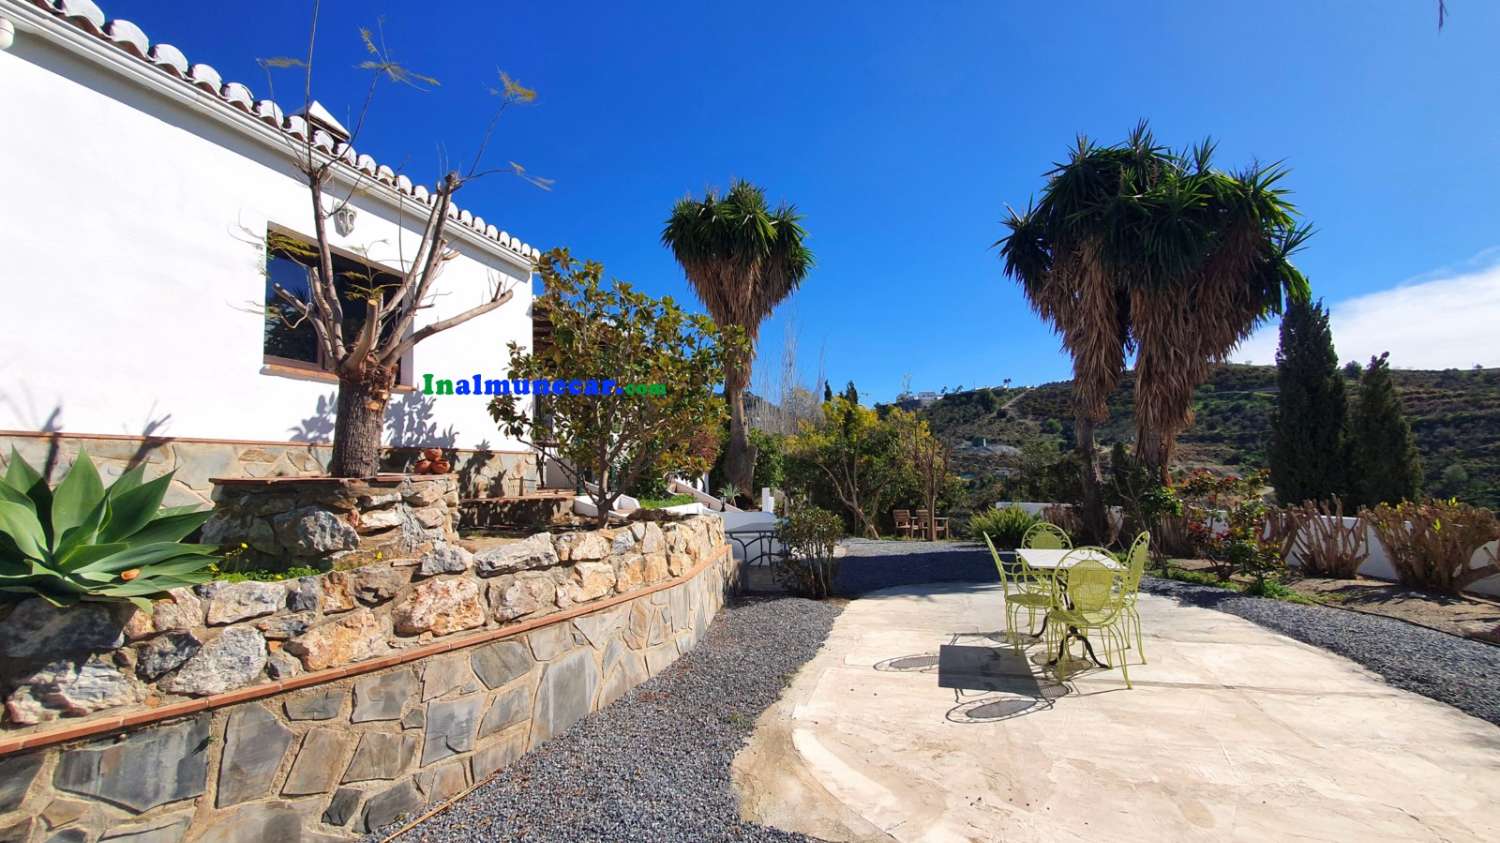 Lantlig villa till salu belägen i bukten La Herradura, Andalusien.